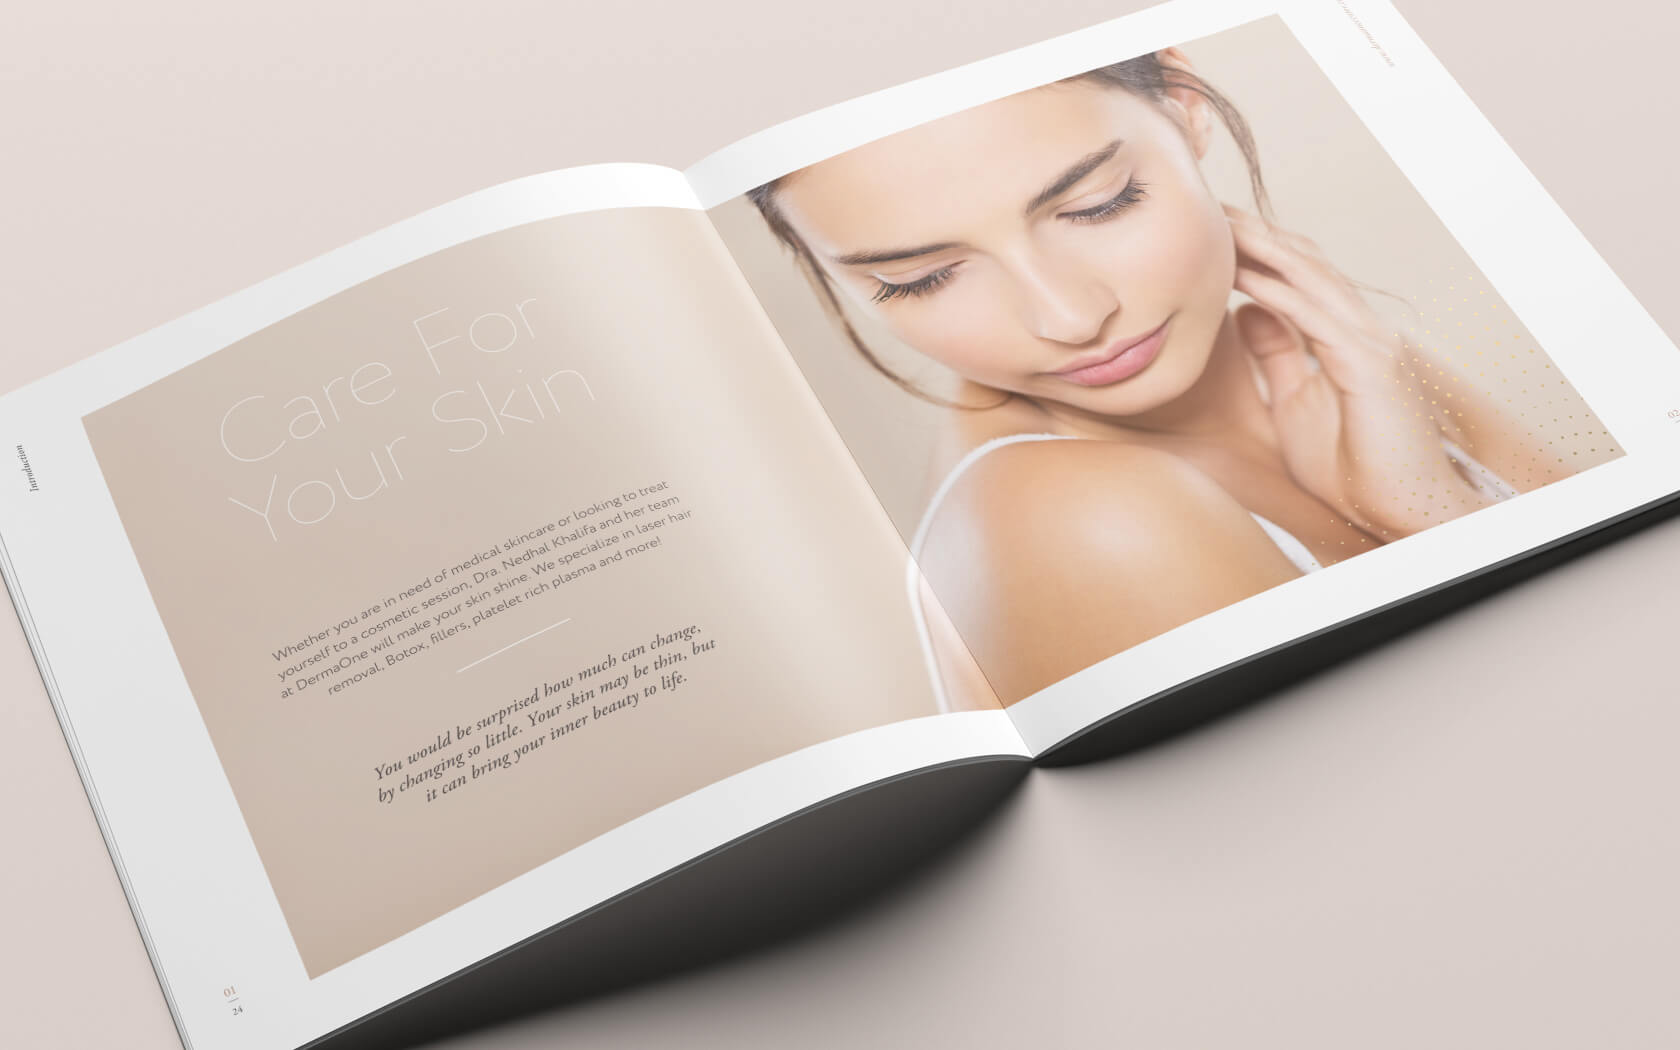 Derma One. Brochure image spread